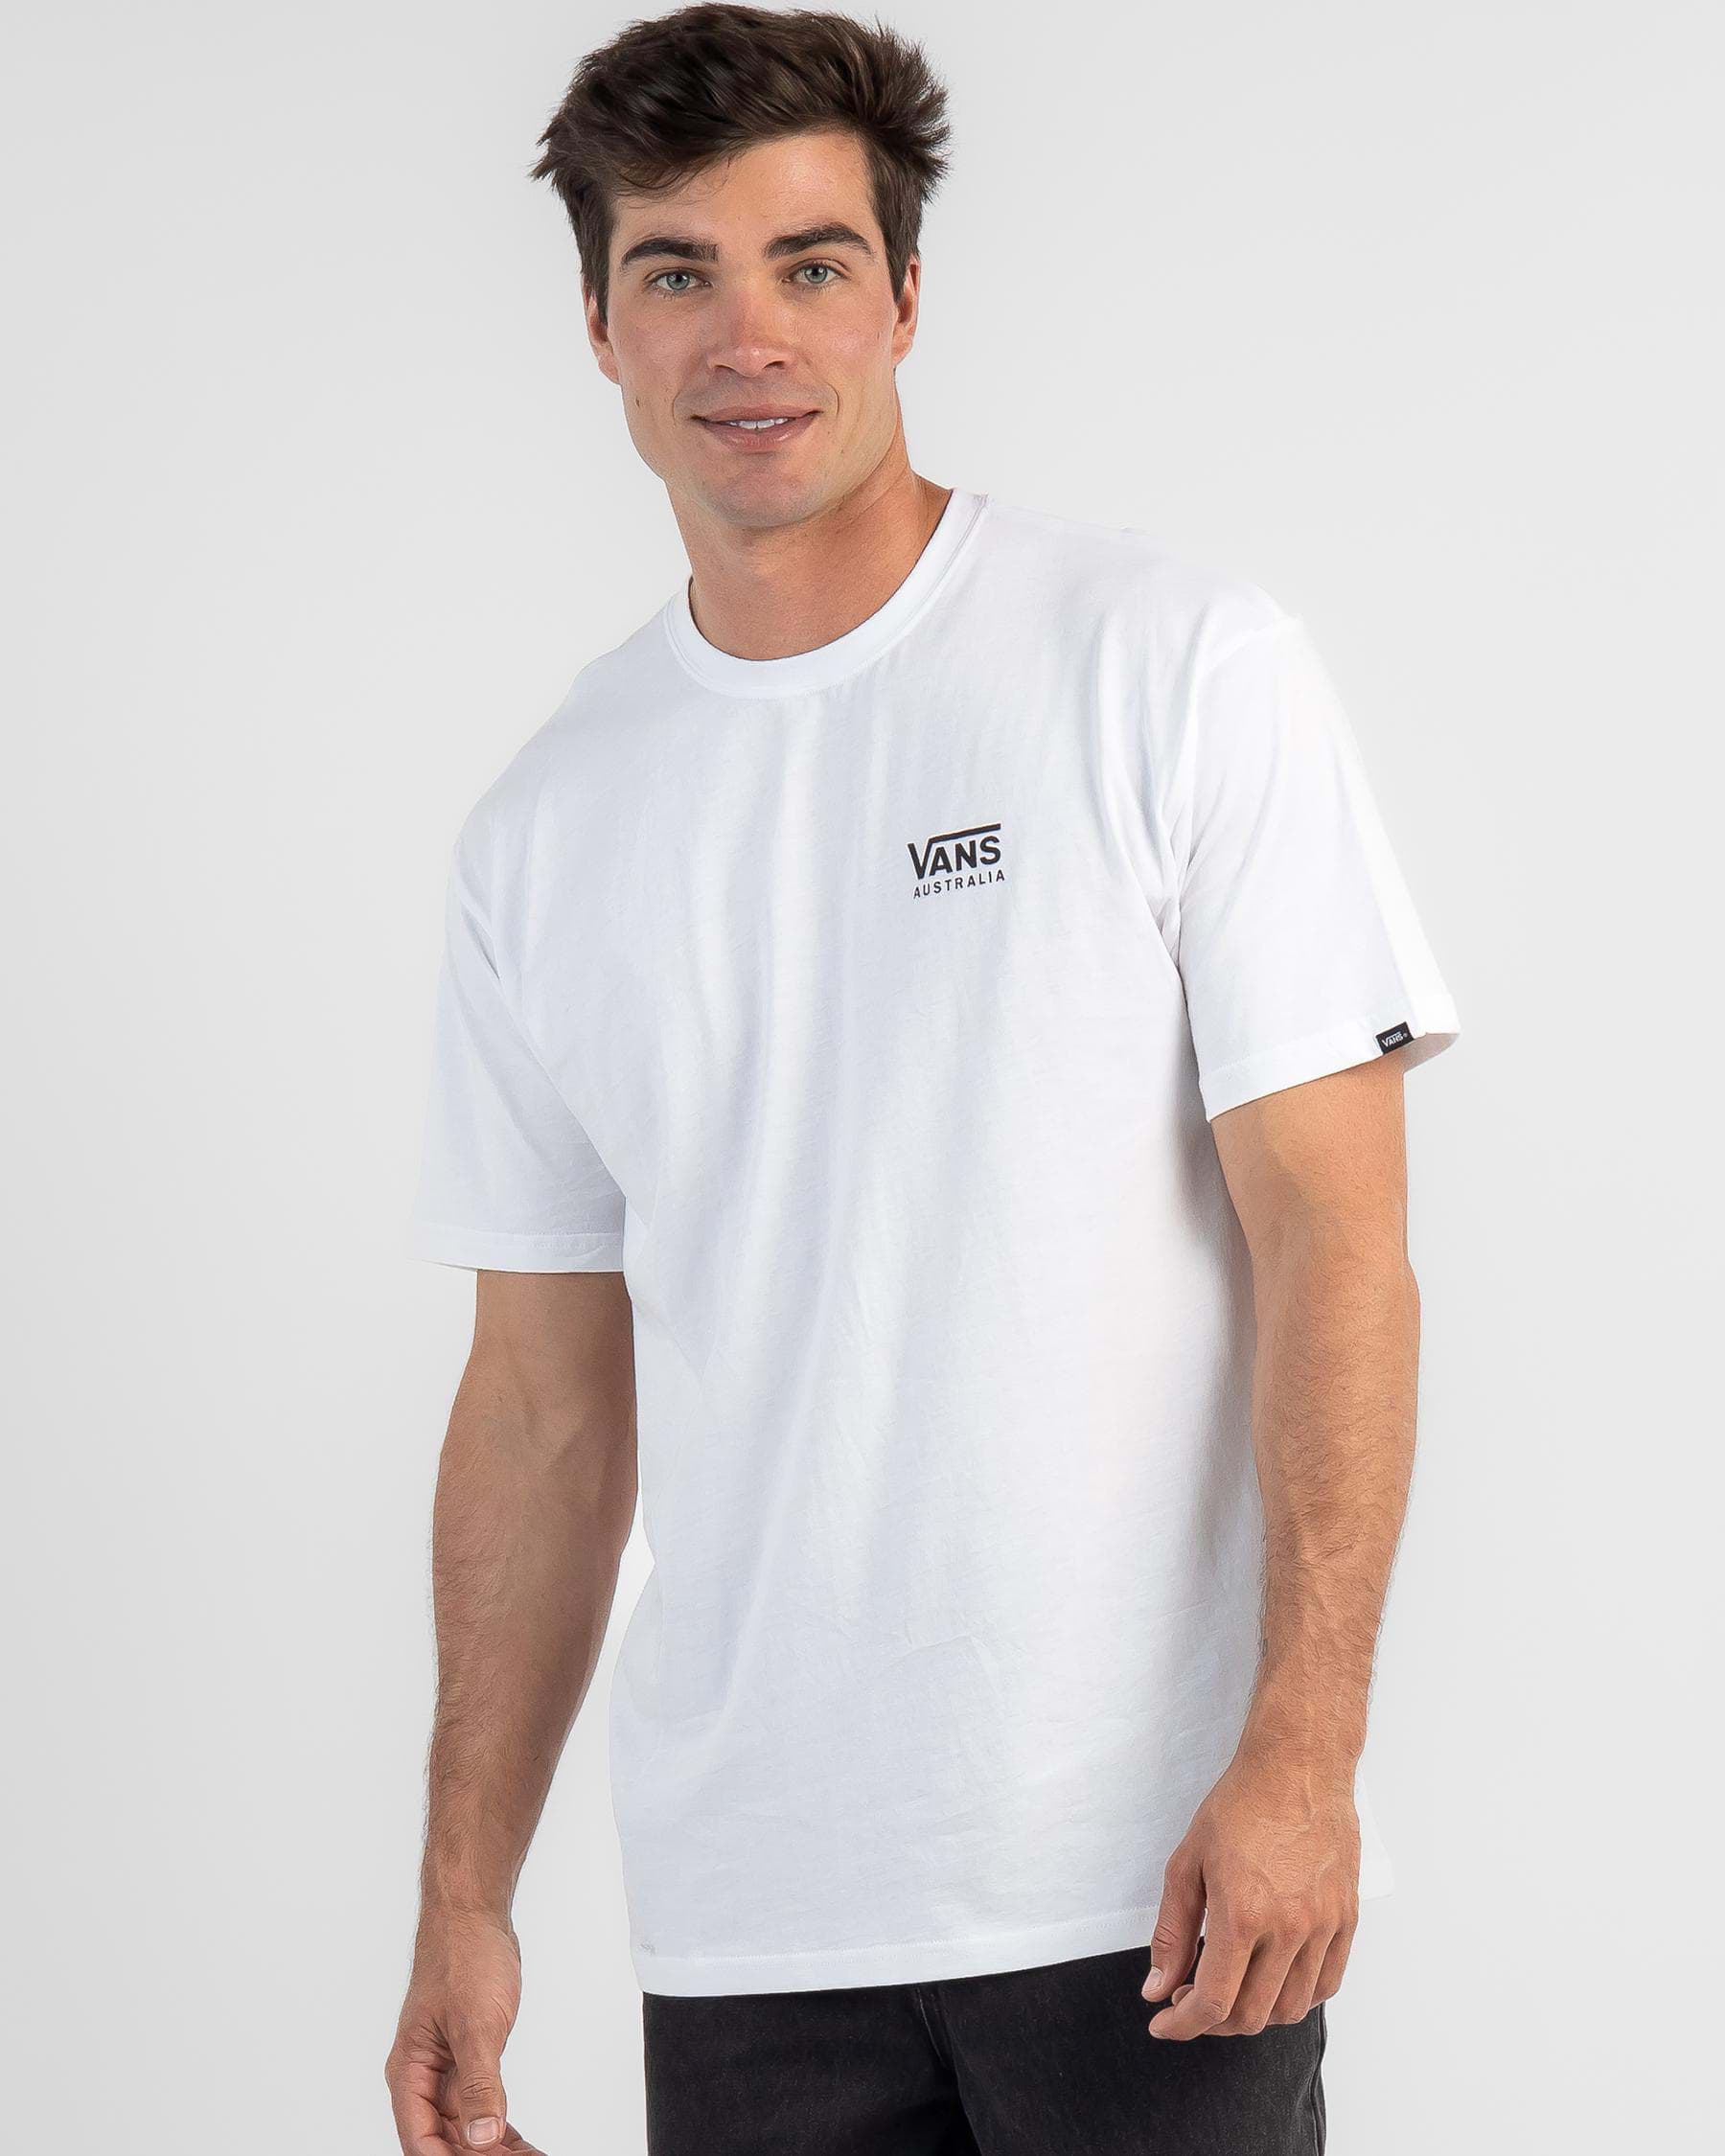 Shop Vans Australia T-Shirt In White - Fast Shipping & Easy Returns ...